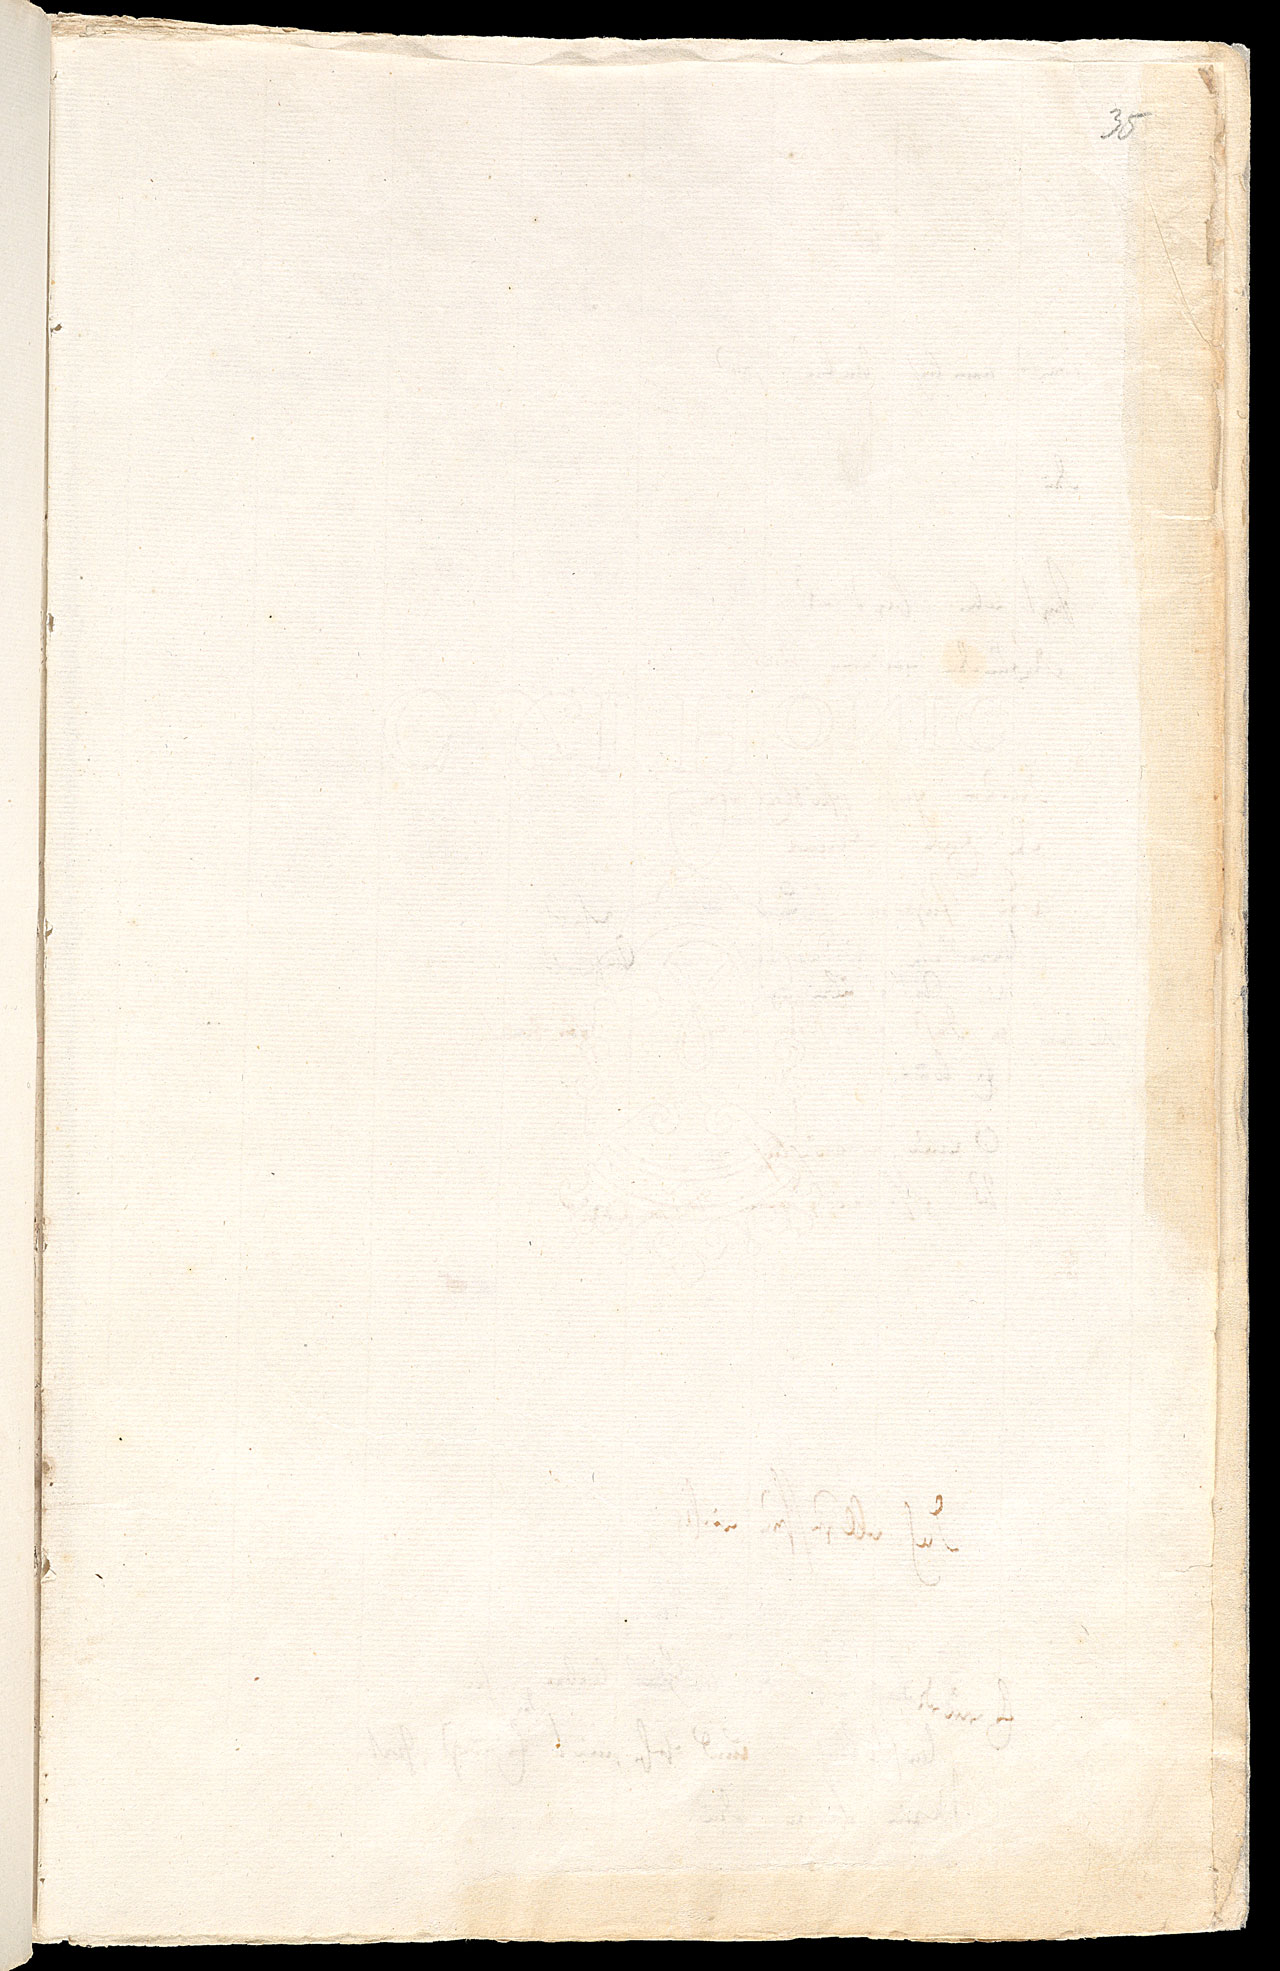 Friedrich Hölderlin, Homburger Folioheft, Seite 35, Handschrift